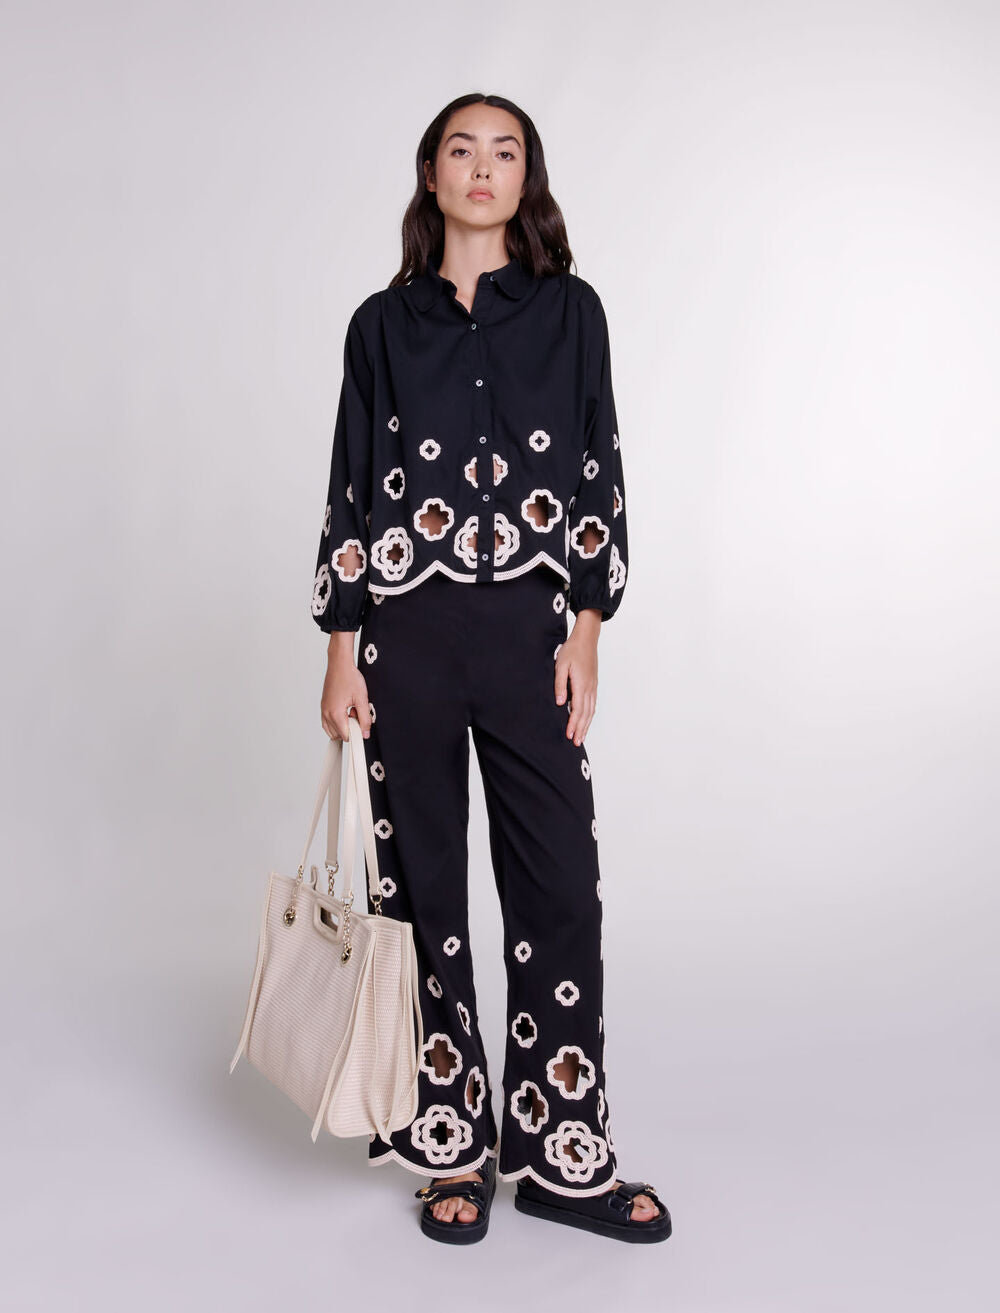 Black-featured-Crochet Clovers shirt